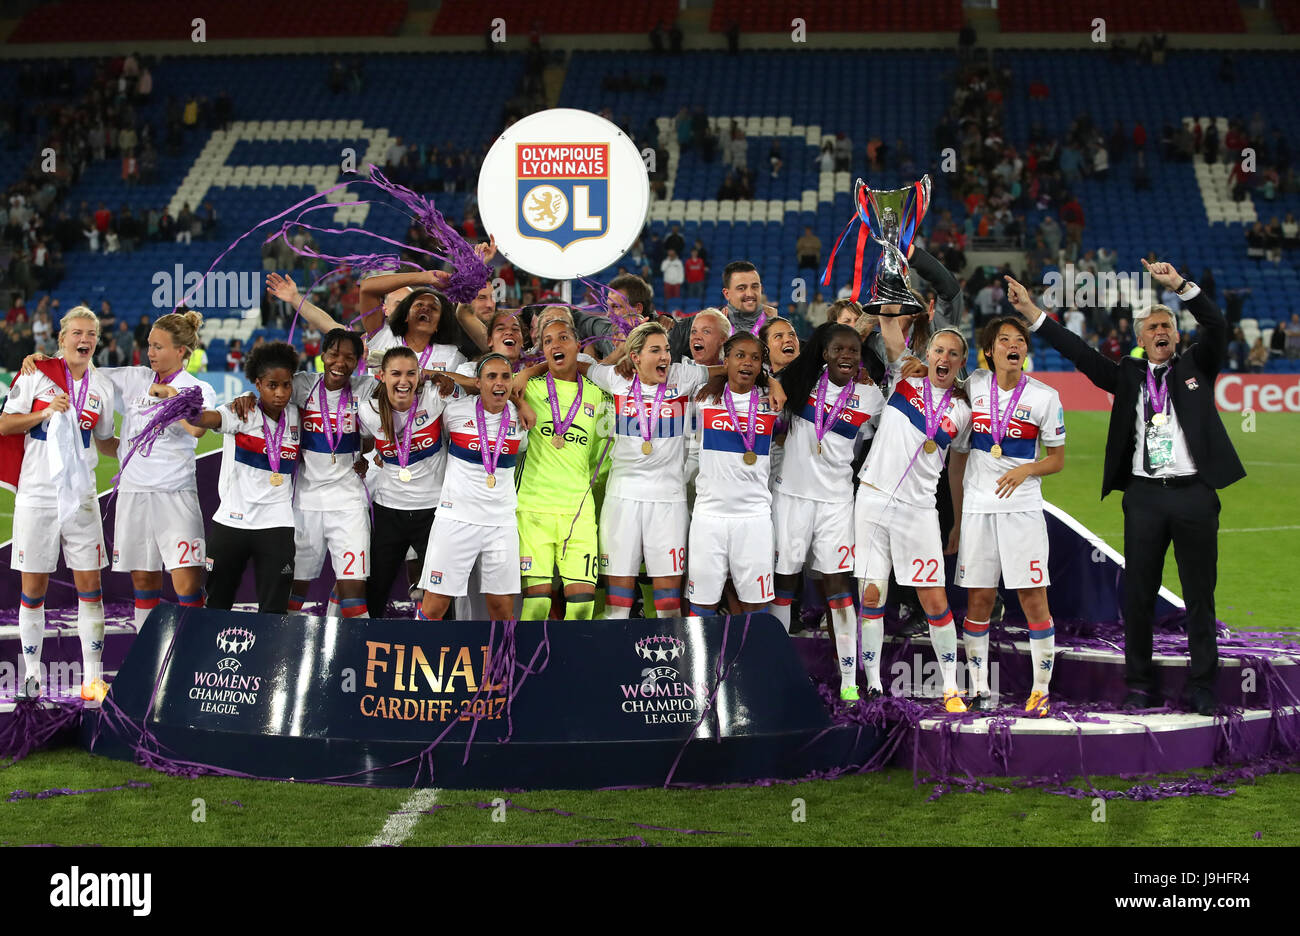 women's champions league 2017